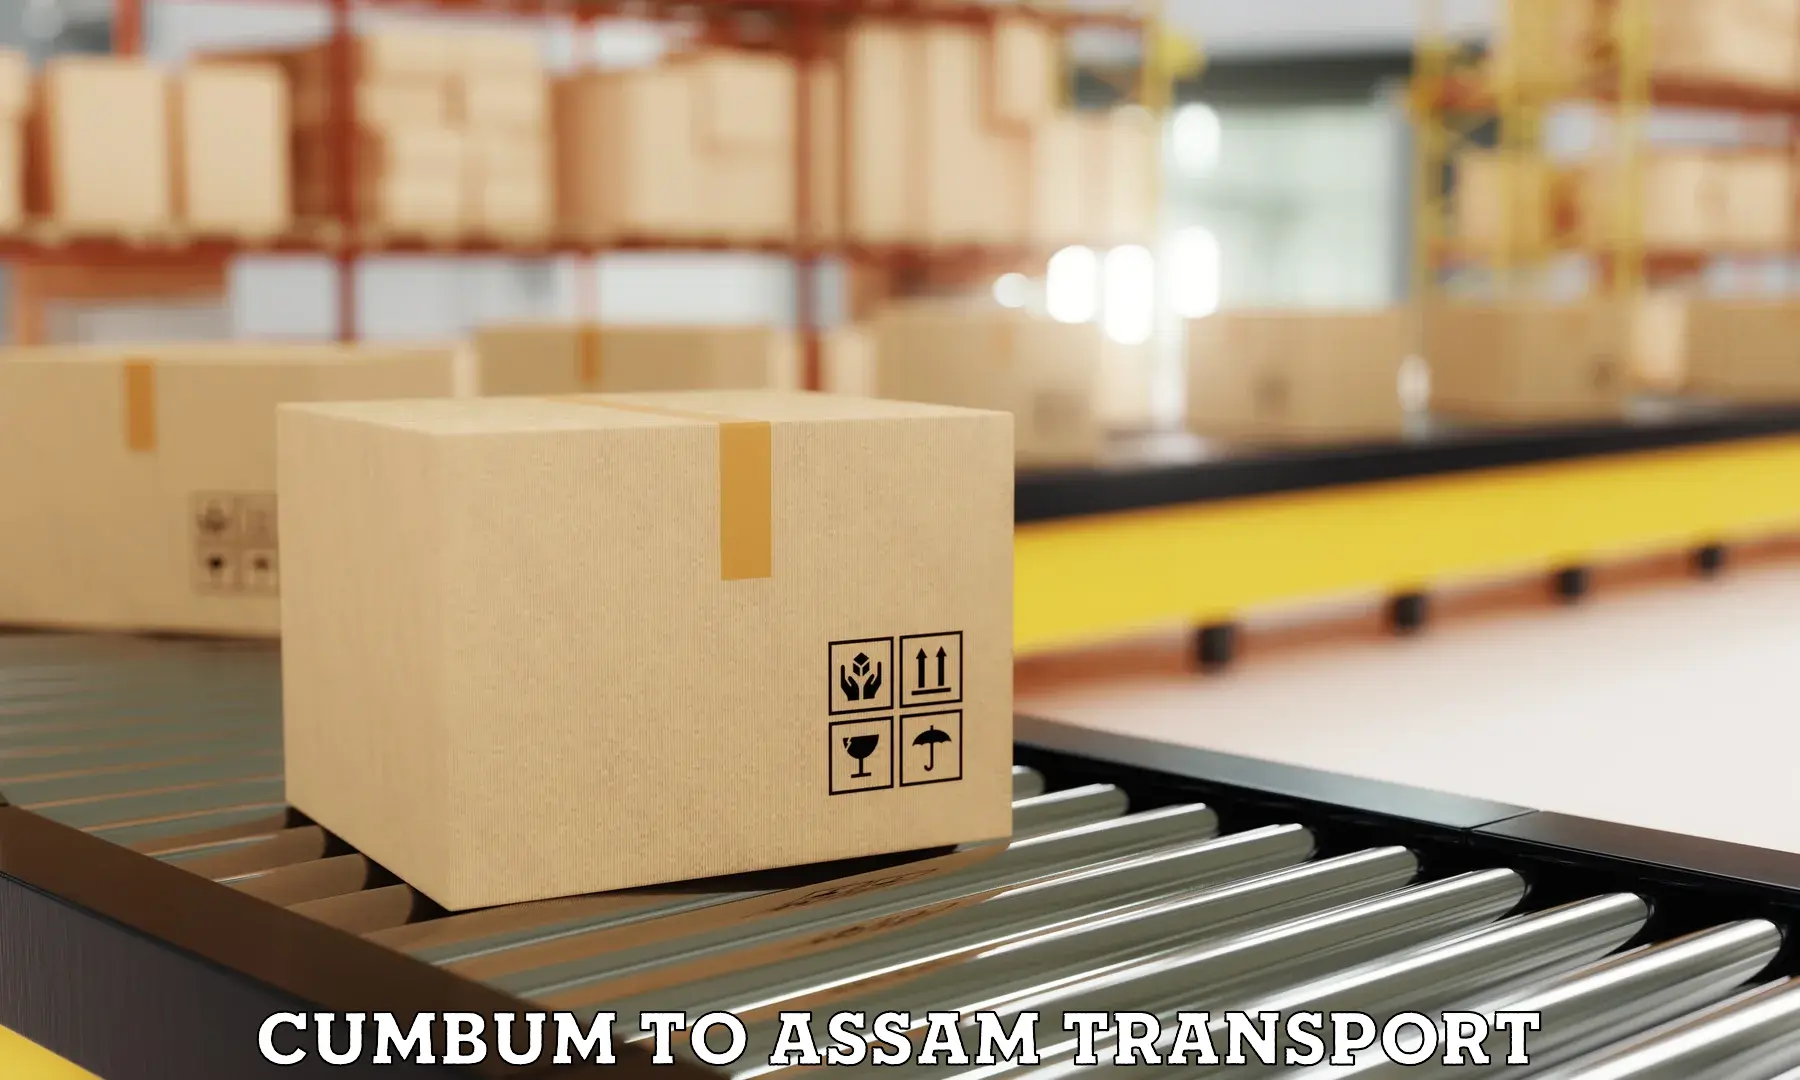 Daily parcel service transport Cumbum to Bamunimaidan